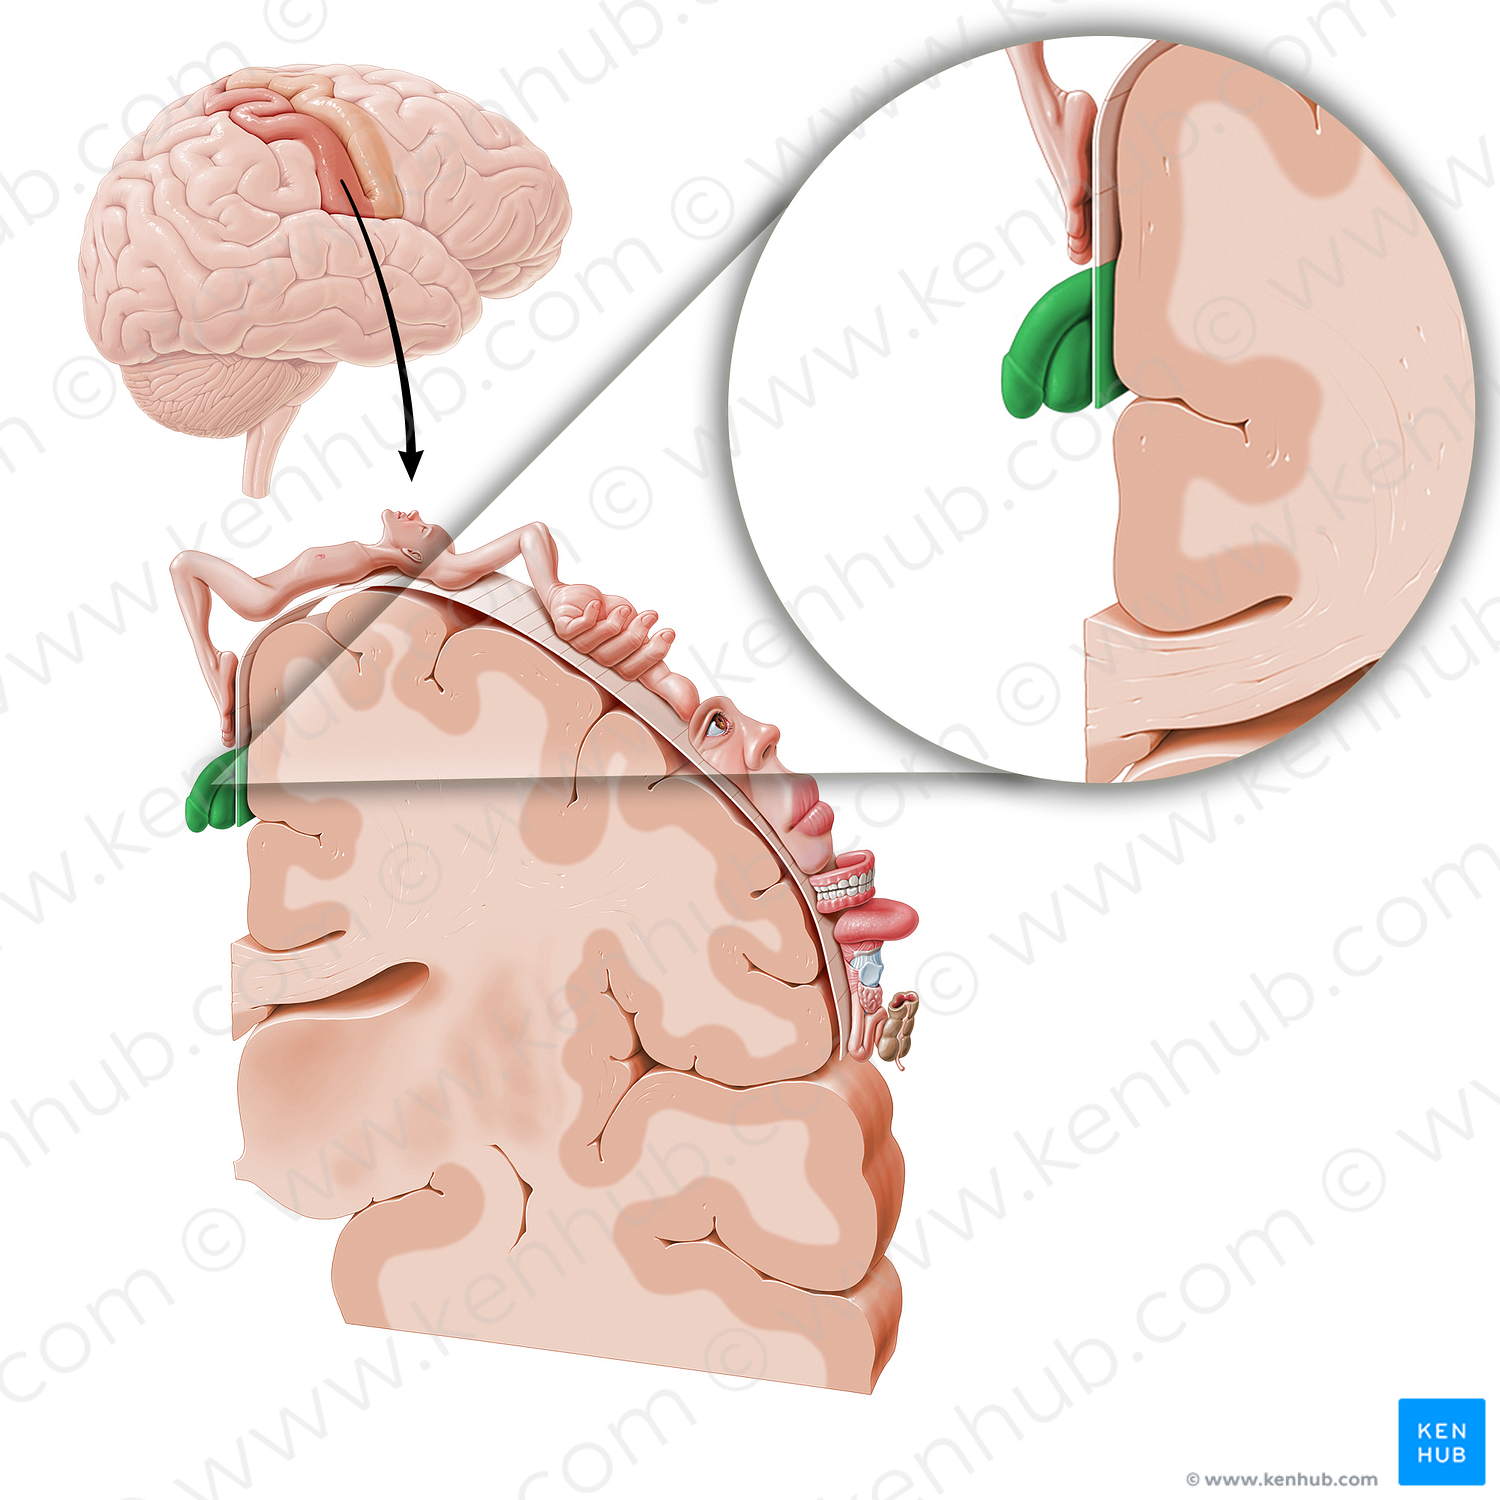 Sensory cortex of genitals (#11044)